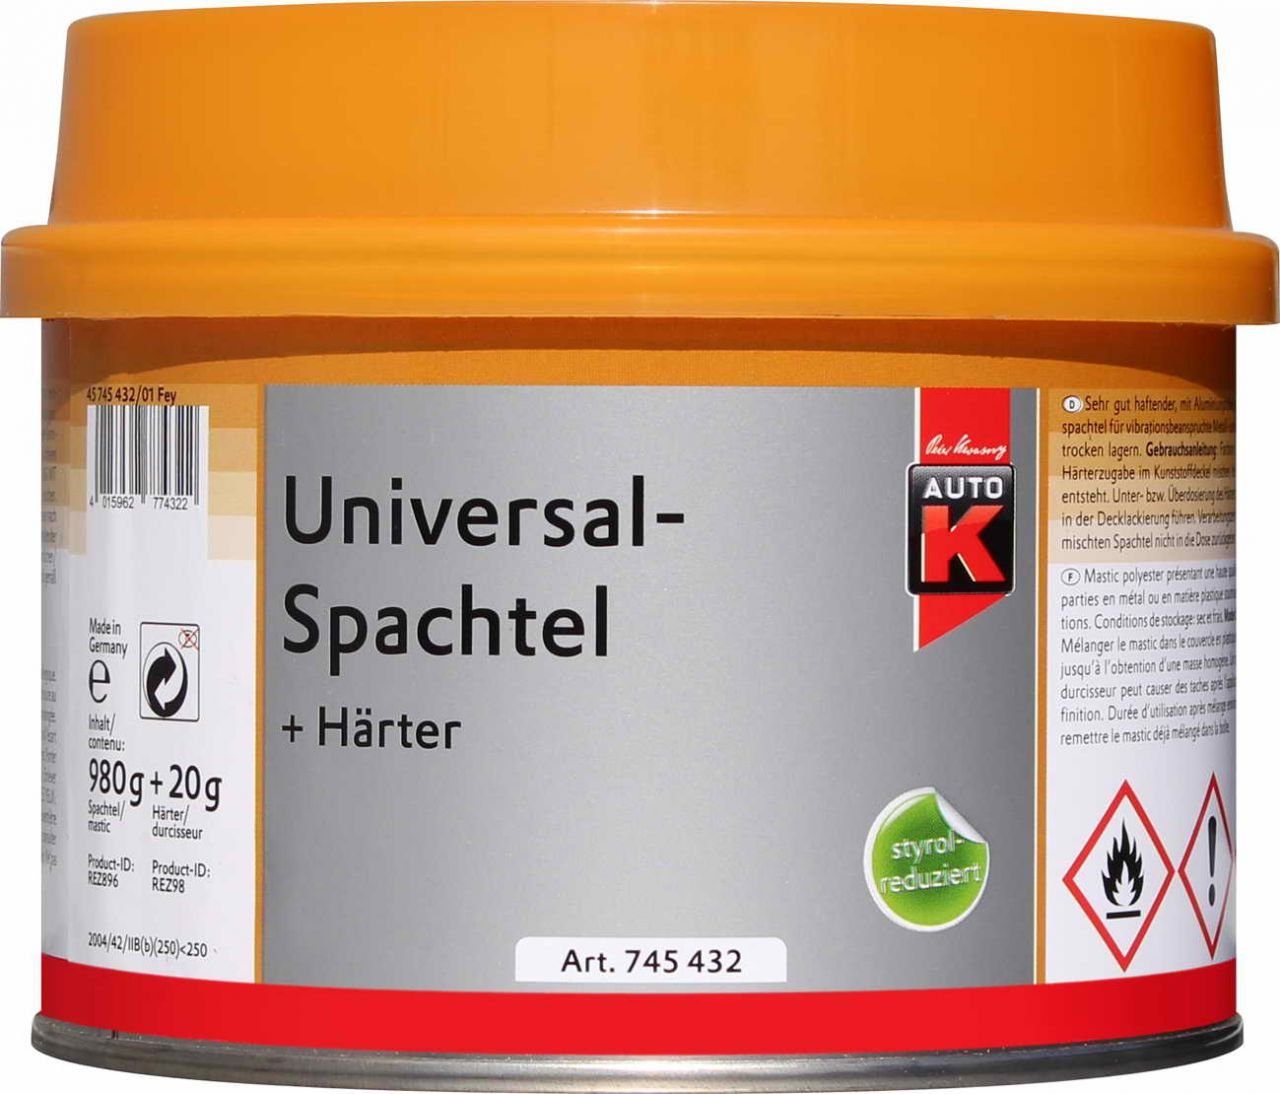 Auto-K Breitspachtel 1000g + Universalspachtel Auto-K Härter